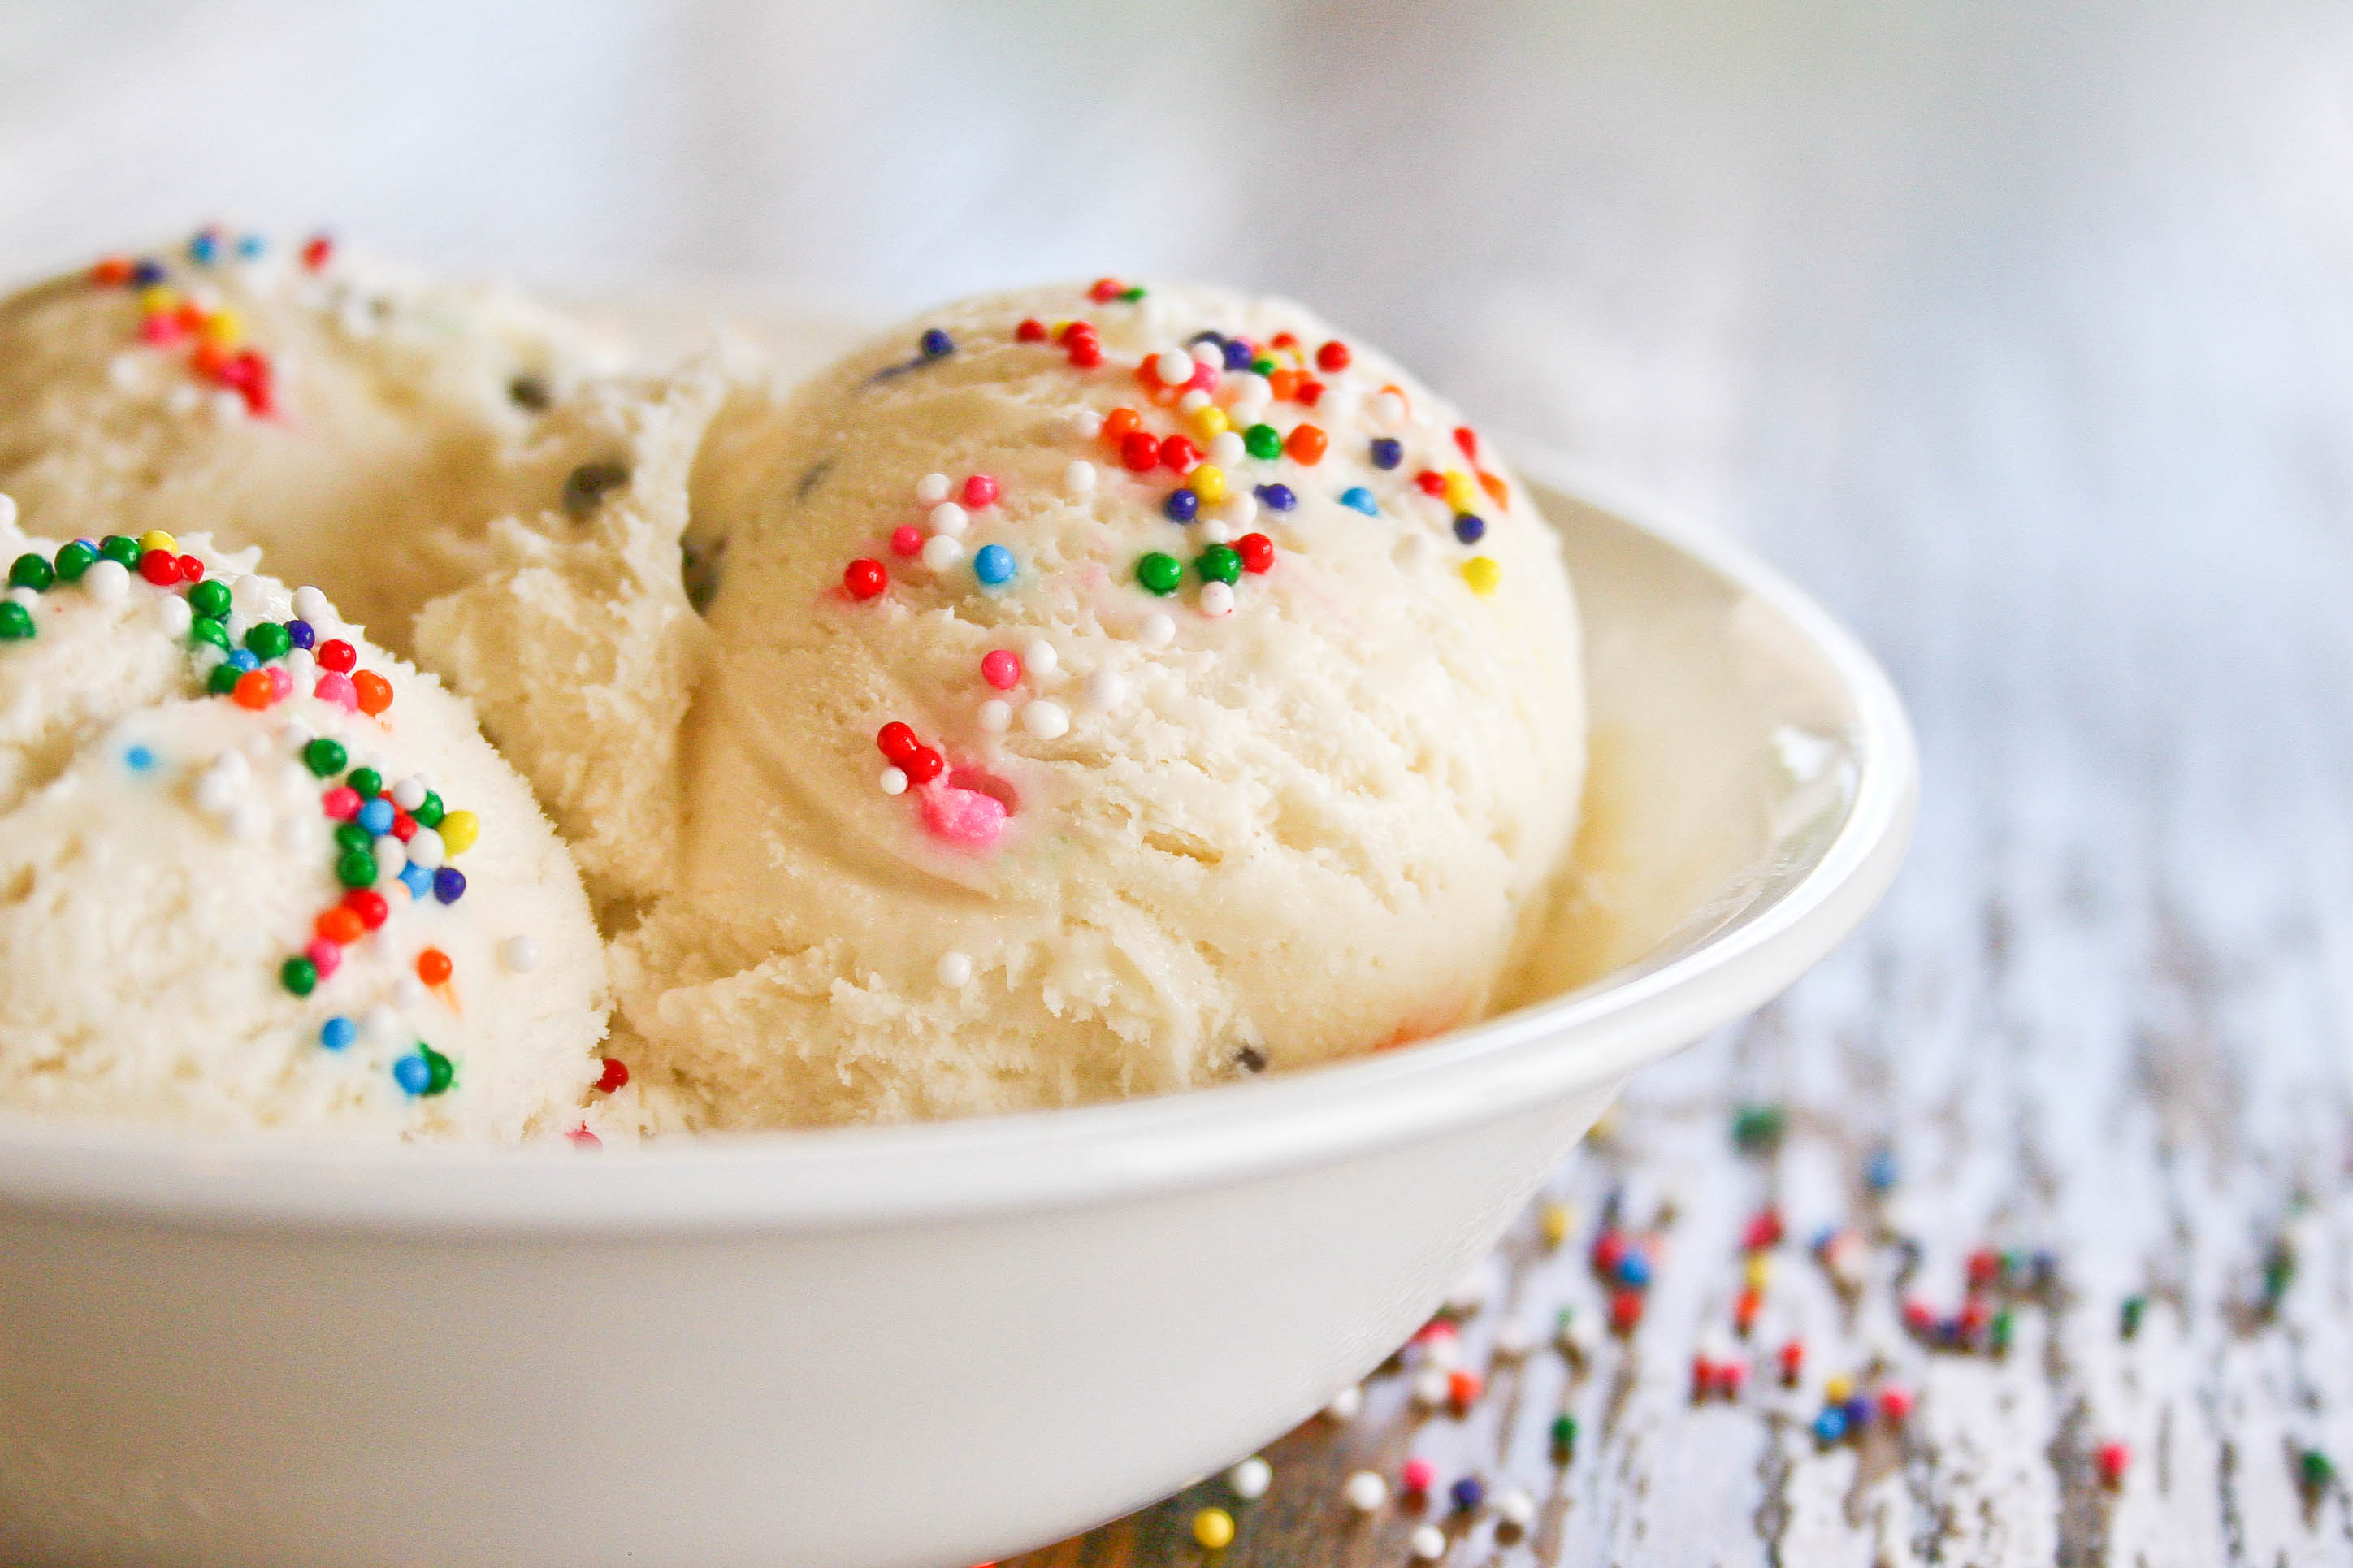  Según un estudio, comer helado combate el mal humor